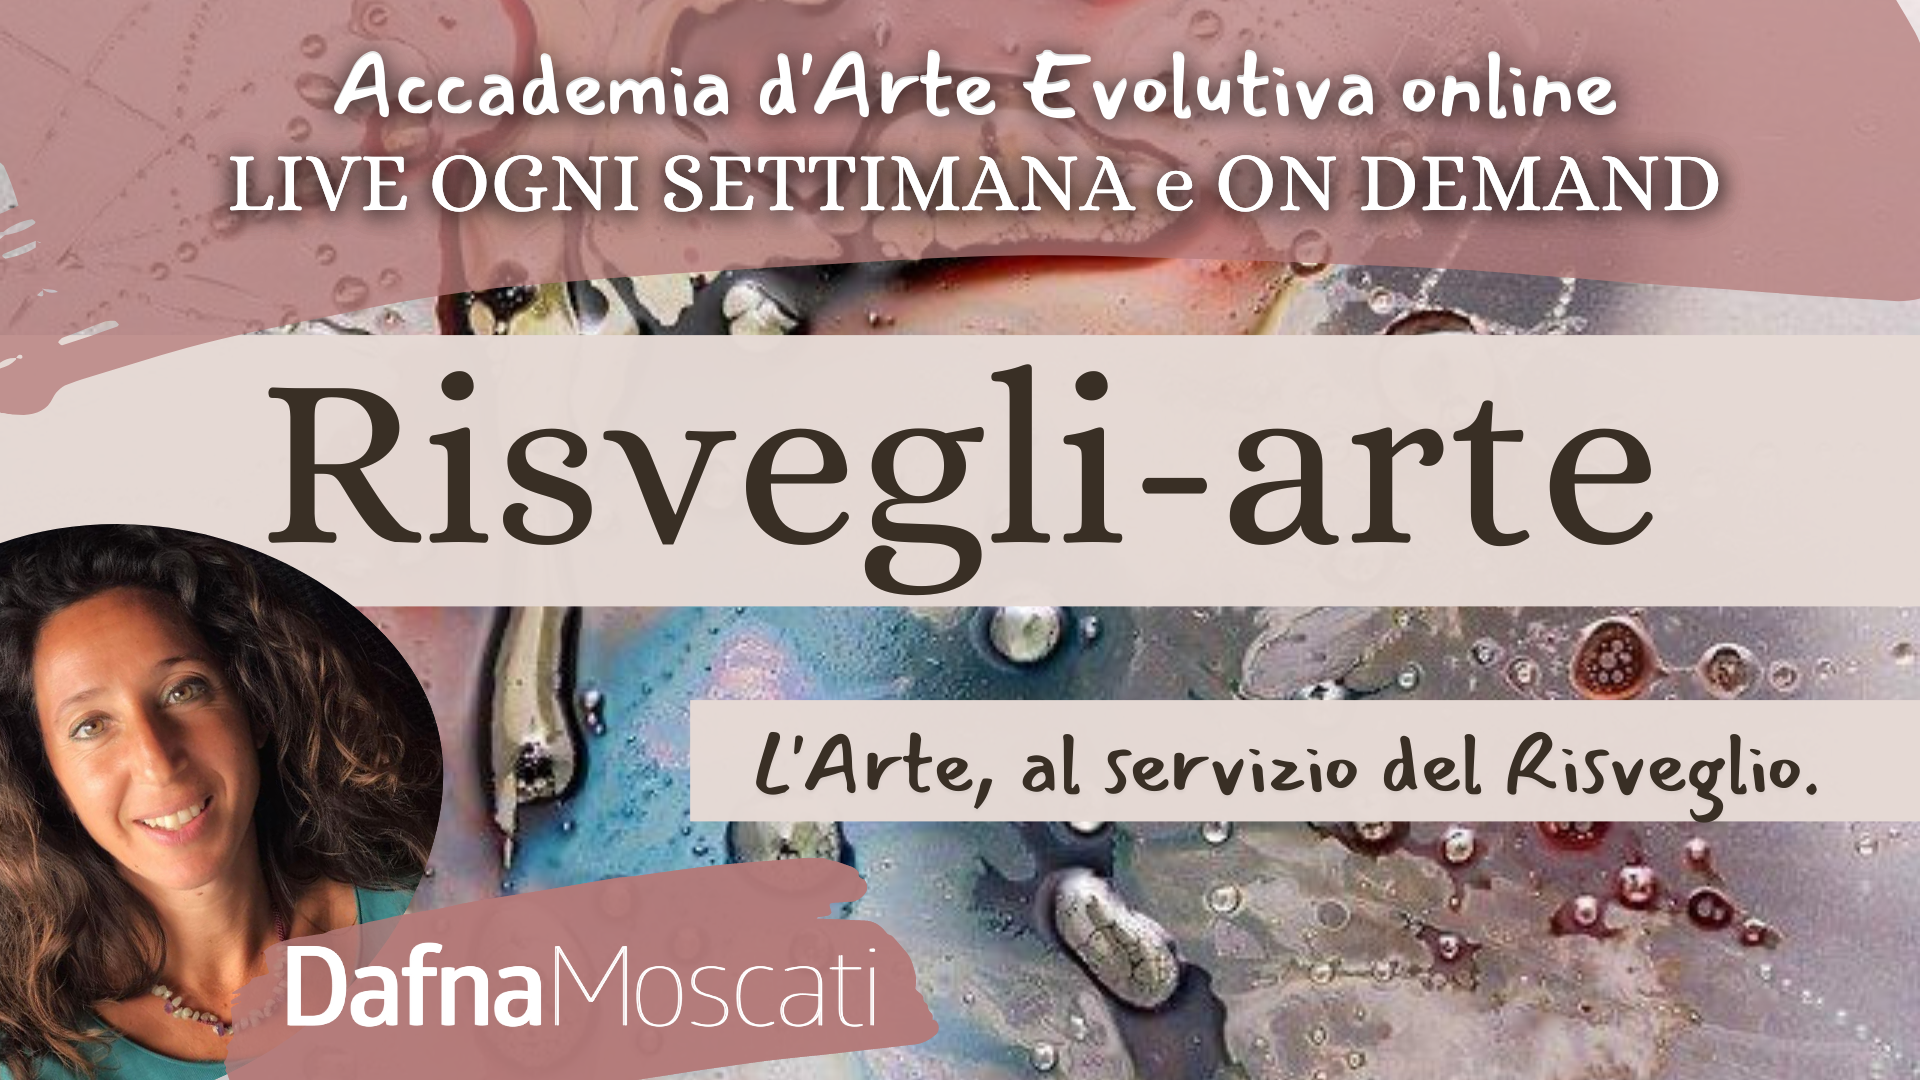 RISVEGLI-ARTE - Accademia d’Arte Evolutiva Online